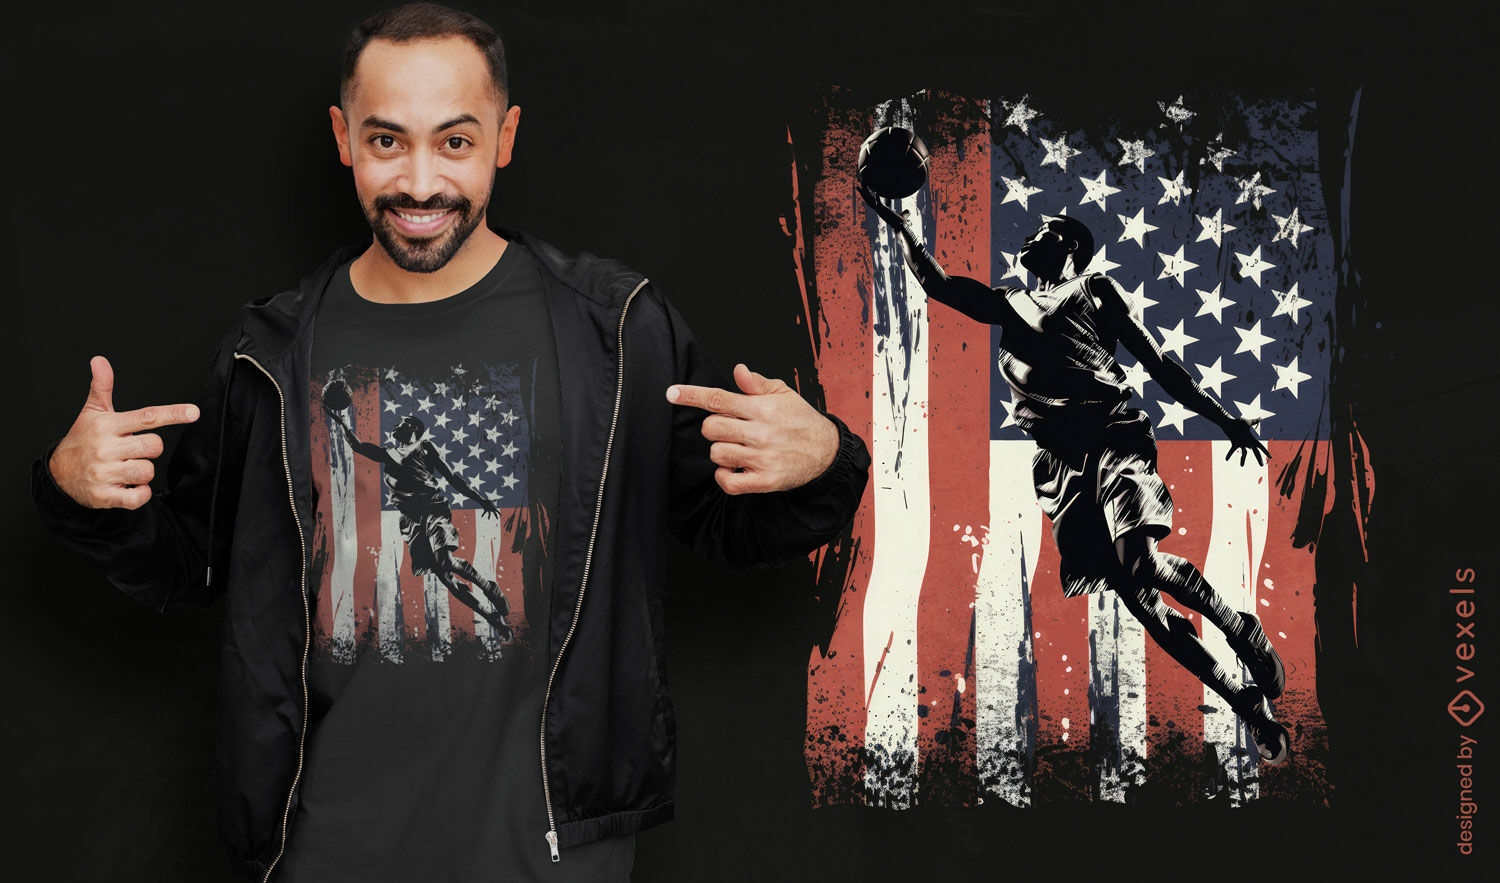 Diseño de camiseta de baloncesto, fútbol y bandera estadounidense.